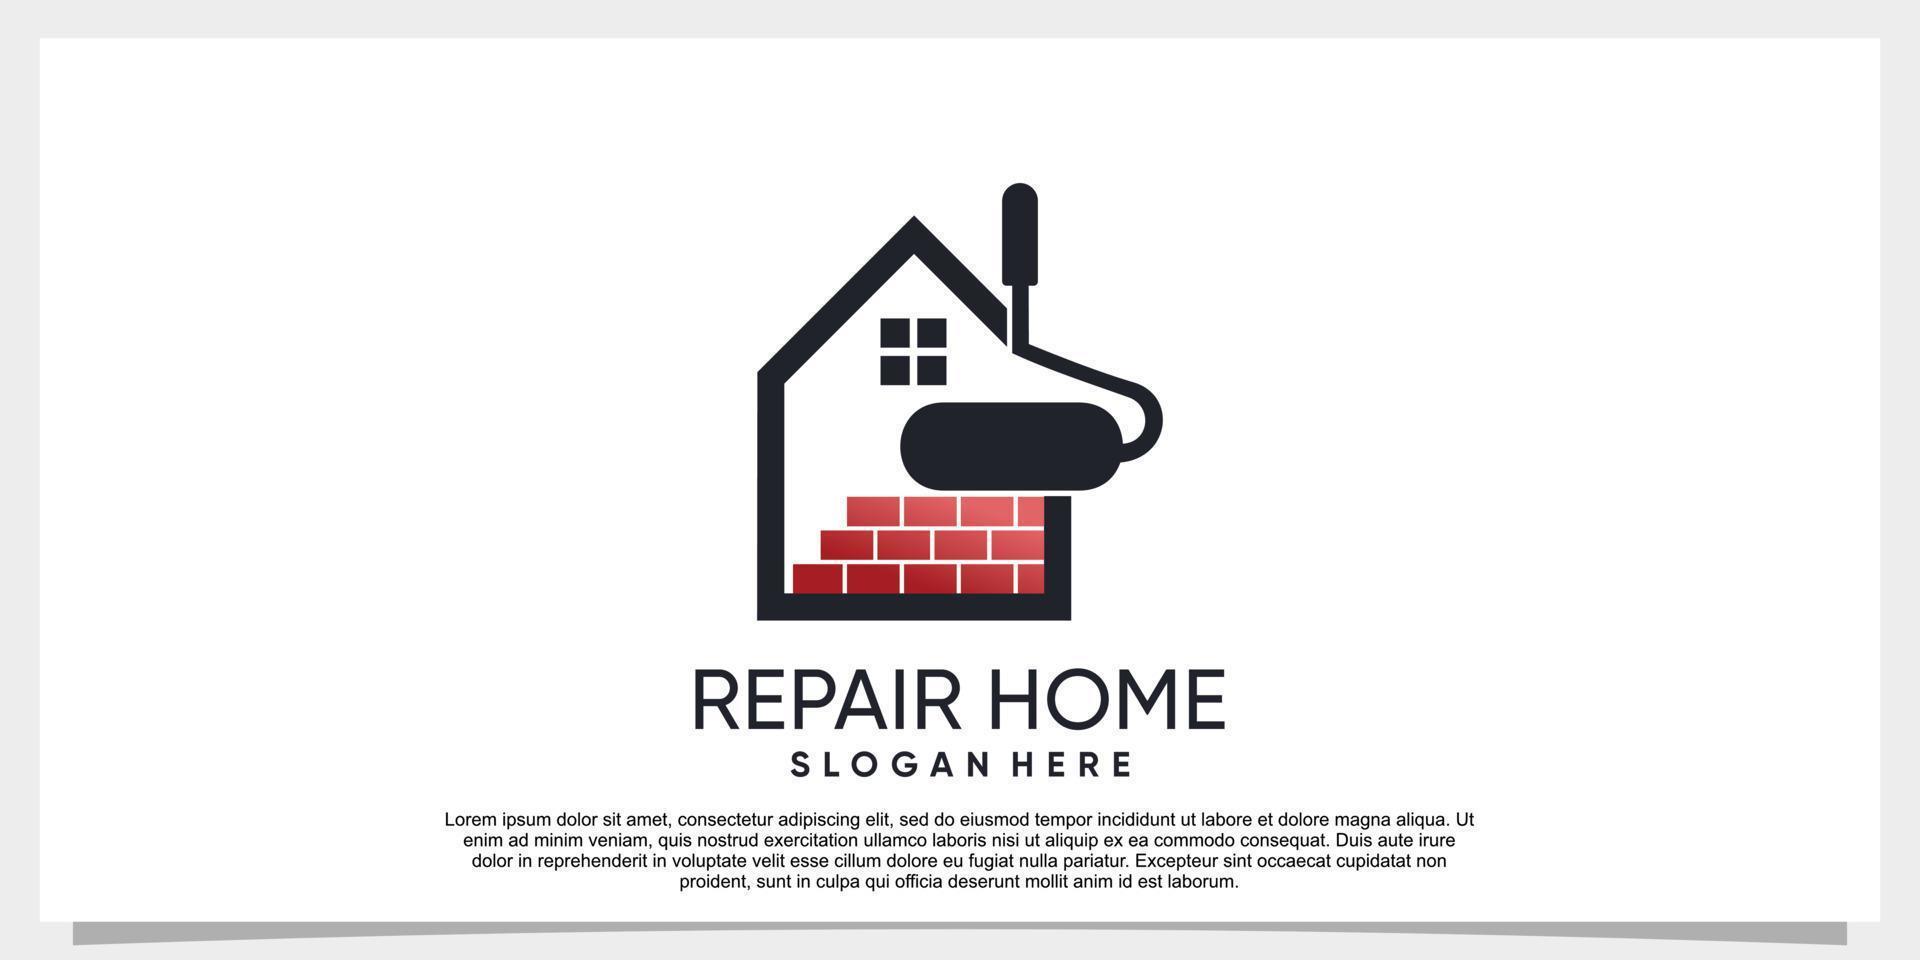 Repair Home logo design simple concept Premium Vector Part 1